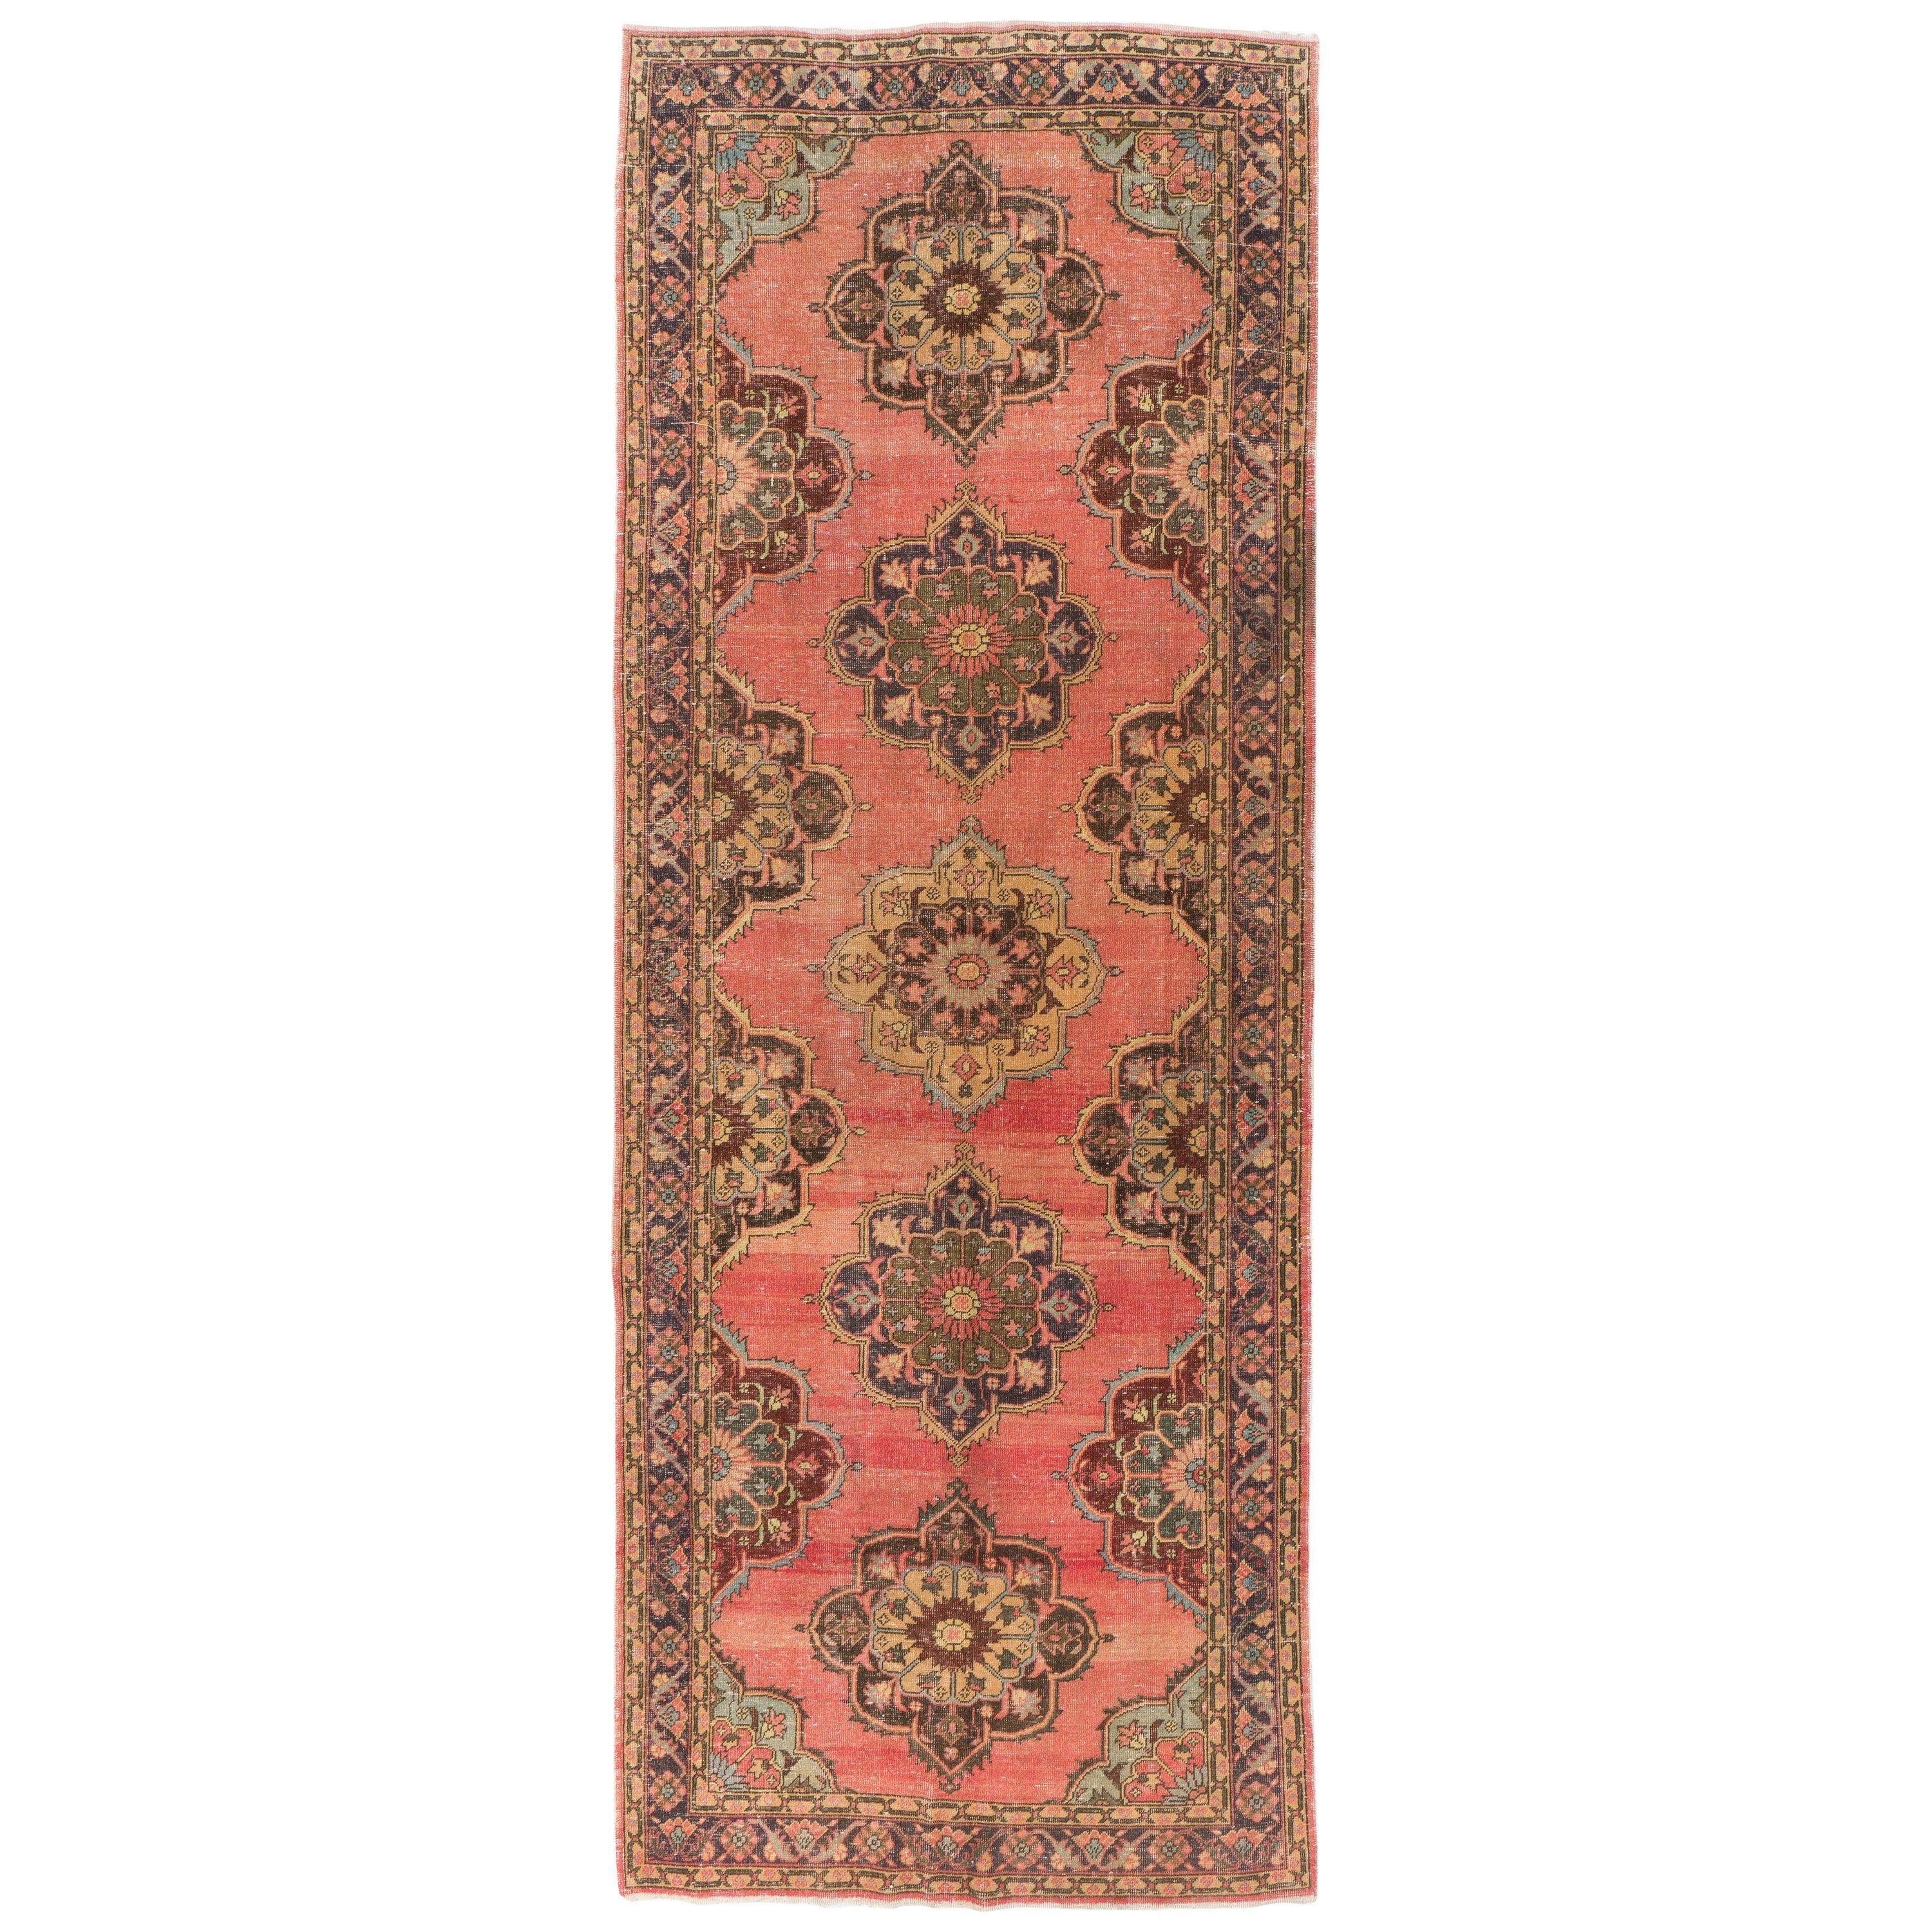 4.8x13.2 Ft Handmade Vintage Konya-Sille Runner Rug for Hallway, Tribal Carpet For Sale